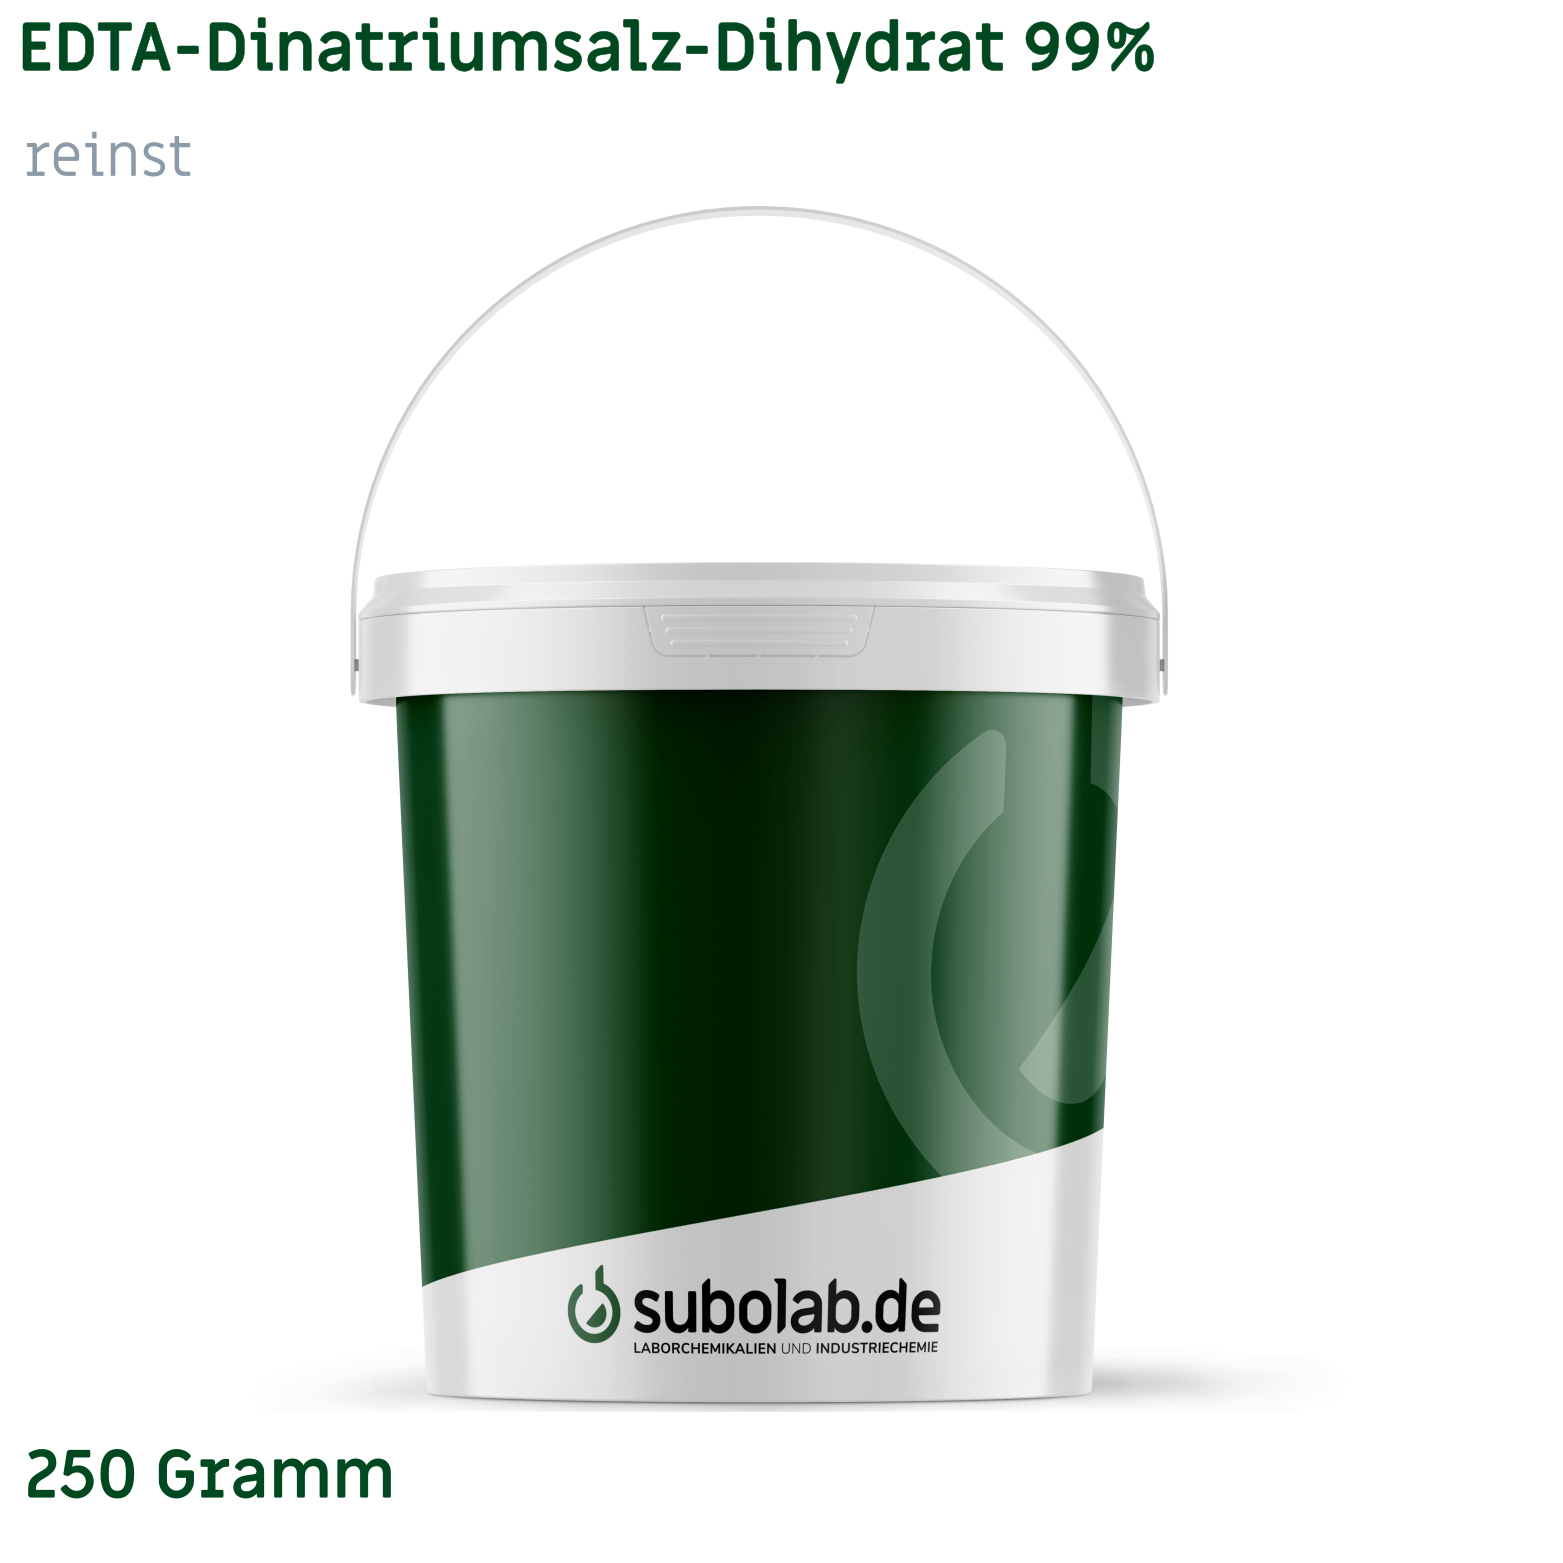 Bild von EDTA - Dinatriumsalz - Dihydrat 99% reinst (250 Gramm)